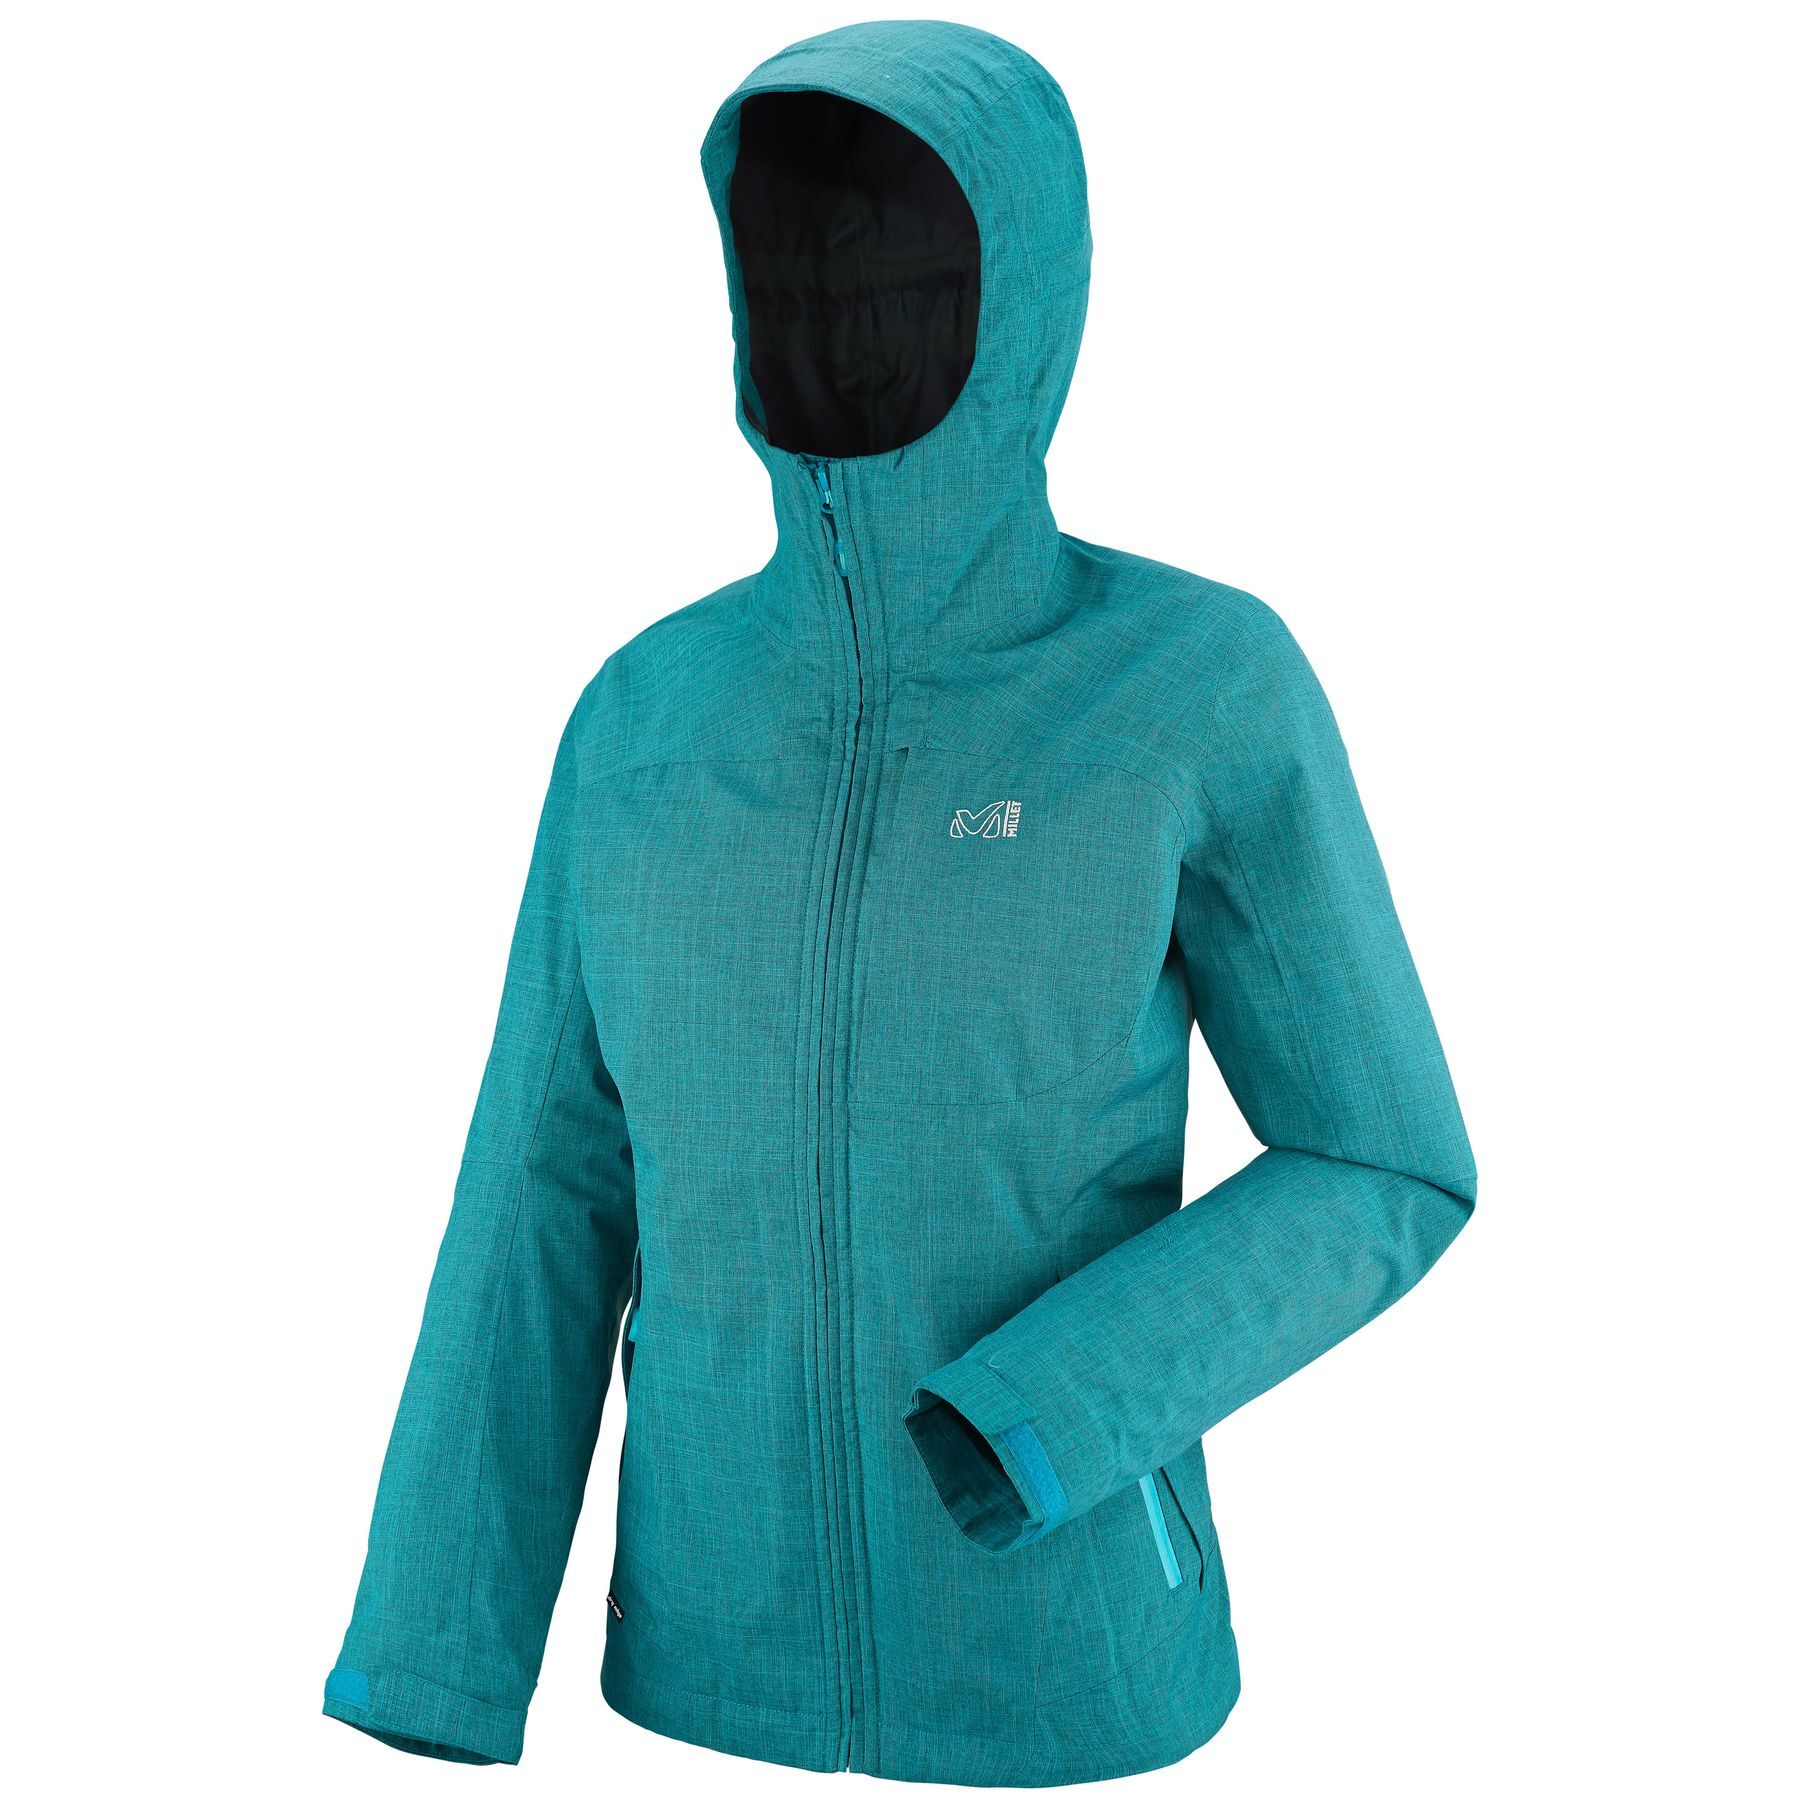 Millet - LD Pumari 3 In 1 Jkt - Outdoor jacket - Women's